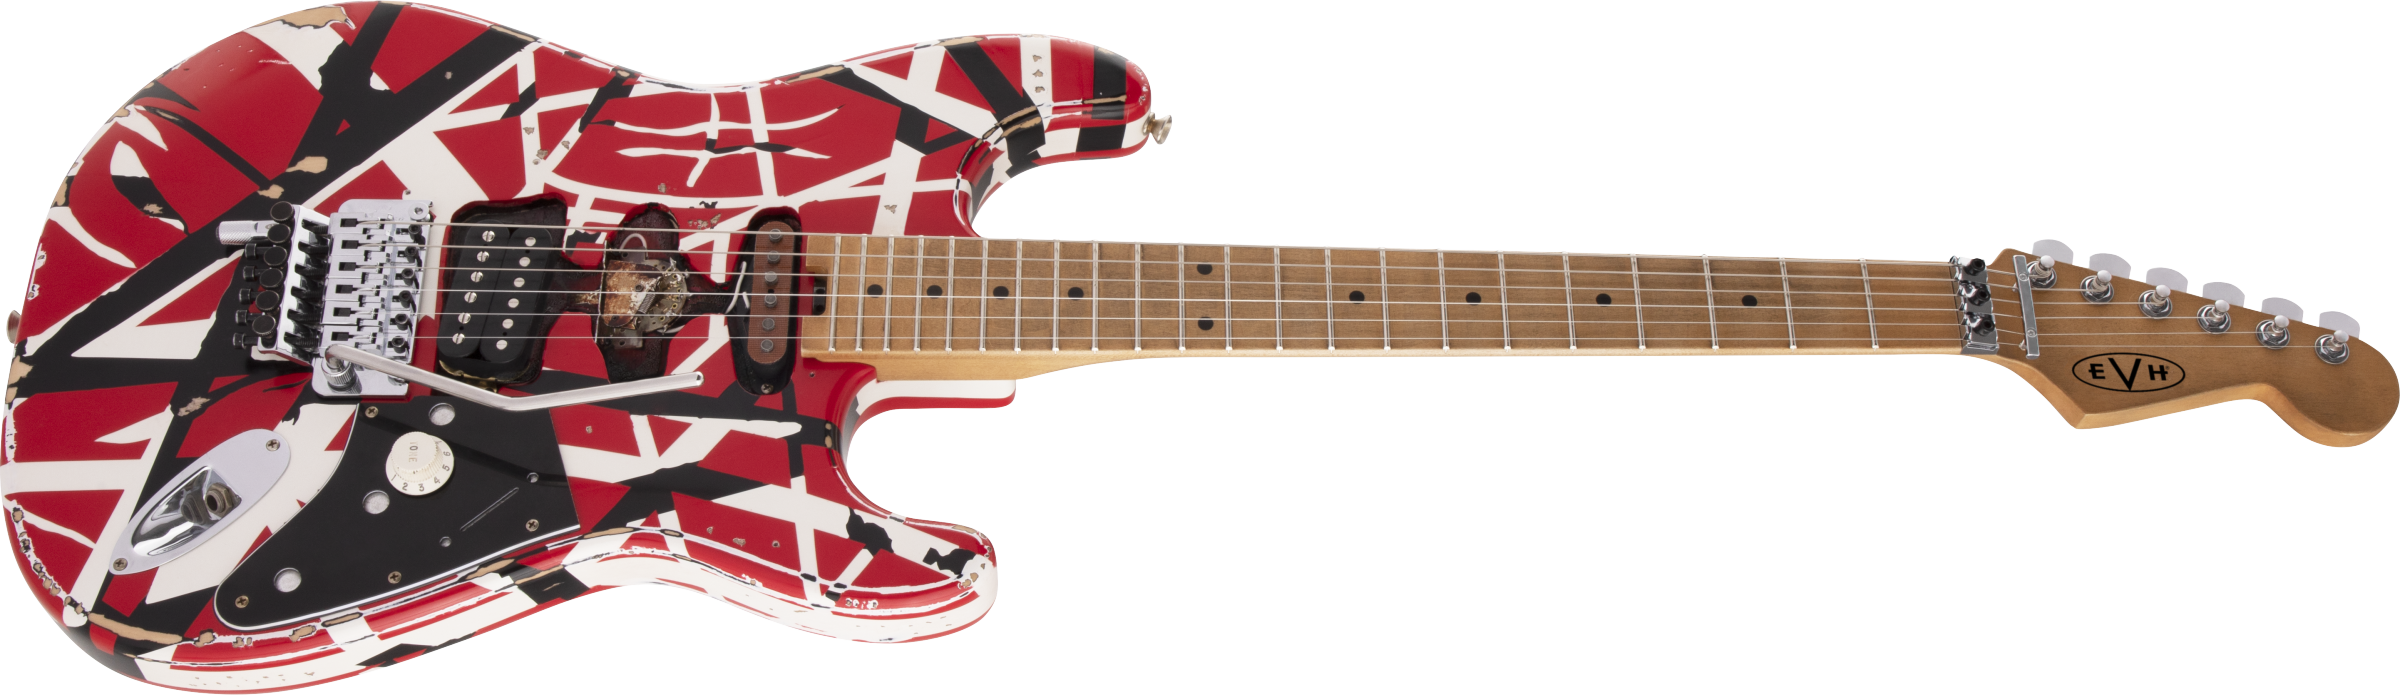 Evh Eddie Van Halen Frankenstein Frankie Striped Series Mex H Fr Mn - Red With Black & White Stripes - E-Gitarre in Str-Form - Variation 2